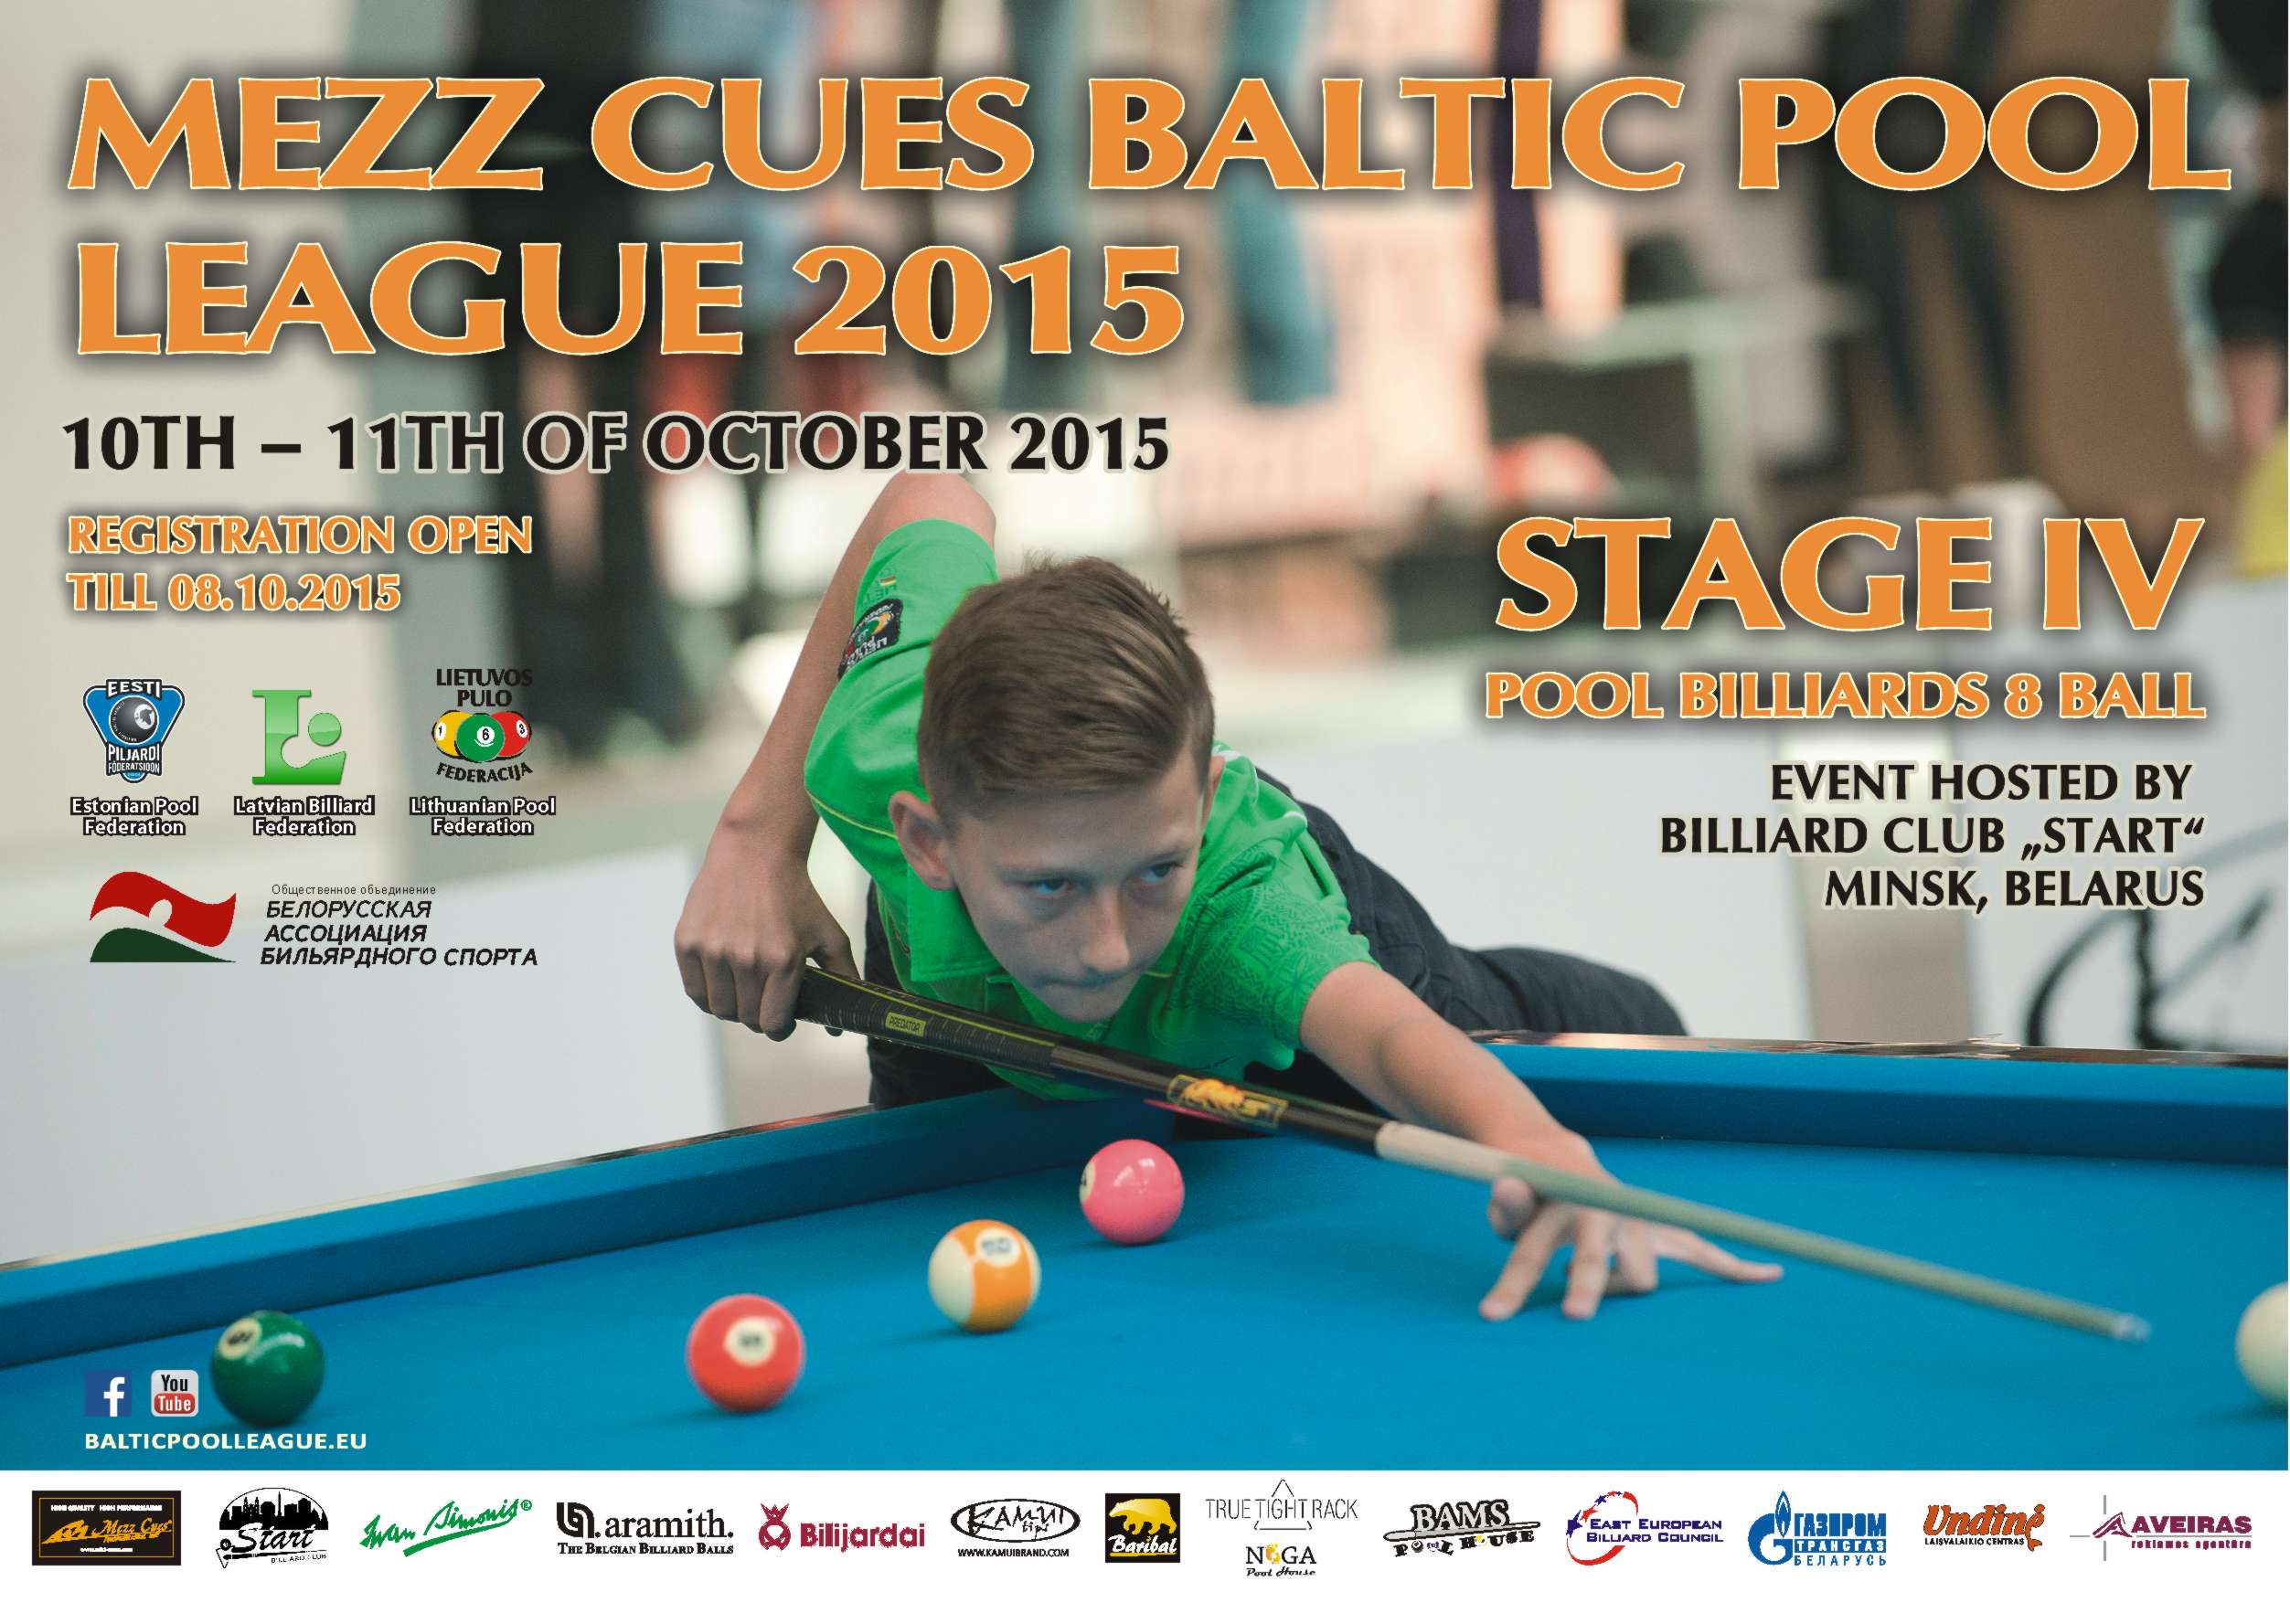 Mezz Cues Baltic Pool League 2015